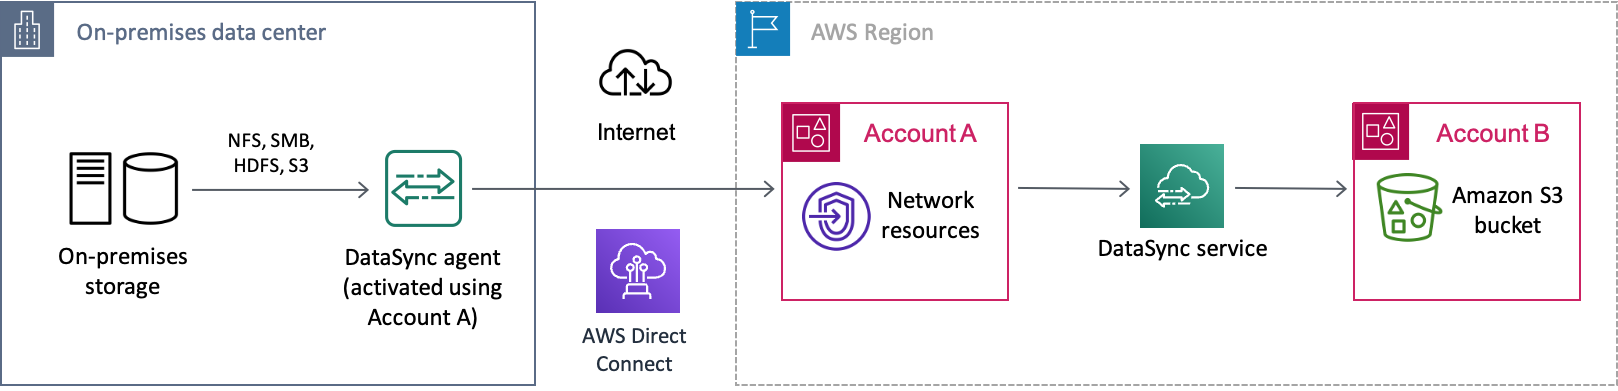 Exemple deDataSync scénario de transfert de données depuis un système de stockage sur site via Internet versAWS. Les données sont d'abord transférées vers un compartimentCompte AWS (compte A), avant d'être finalement transférées dans un compartiment Amazon S3 dans un autreCompte AWS (compte B).